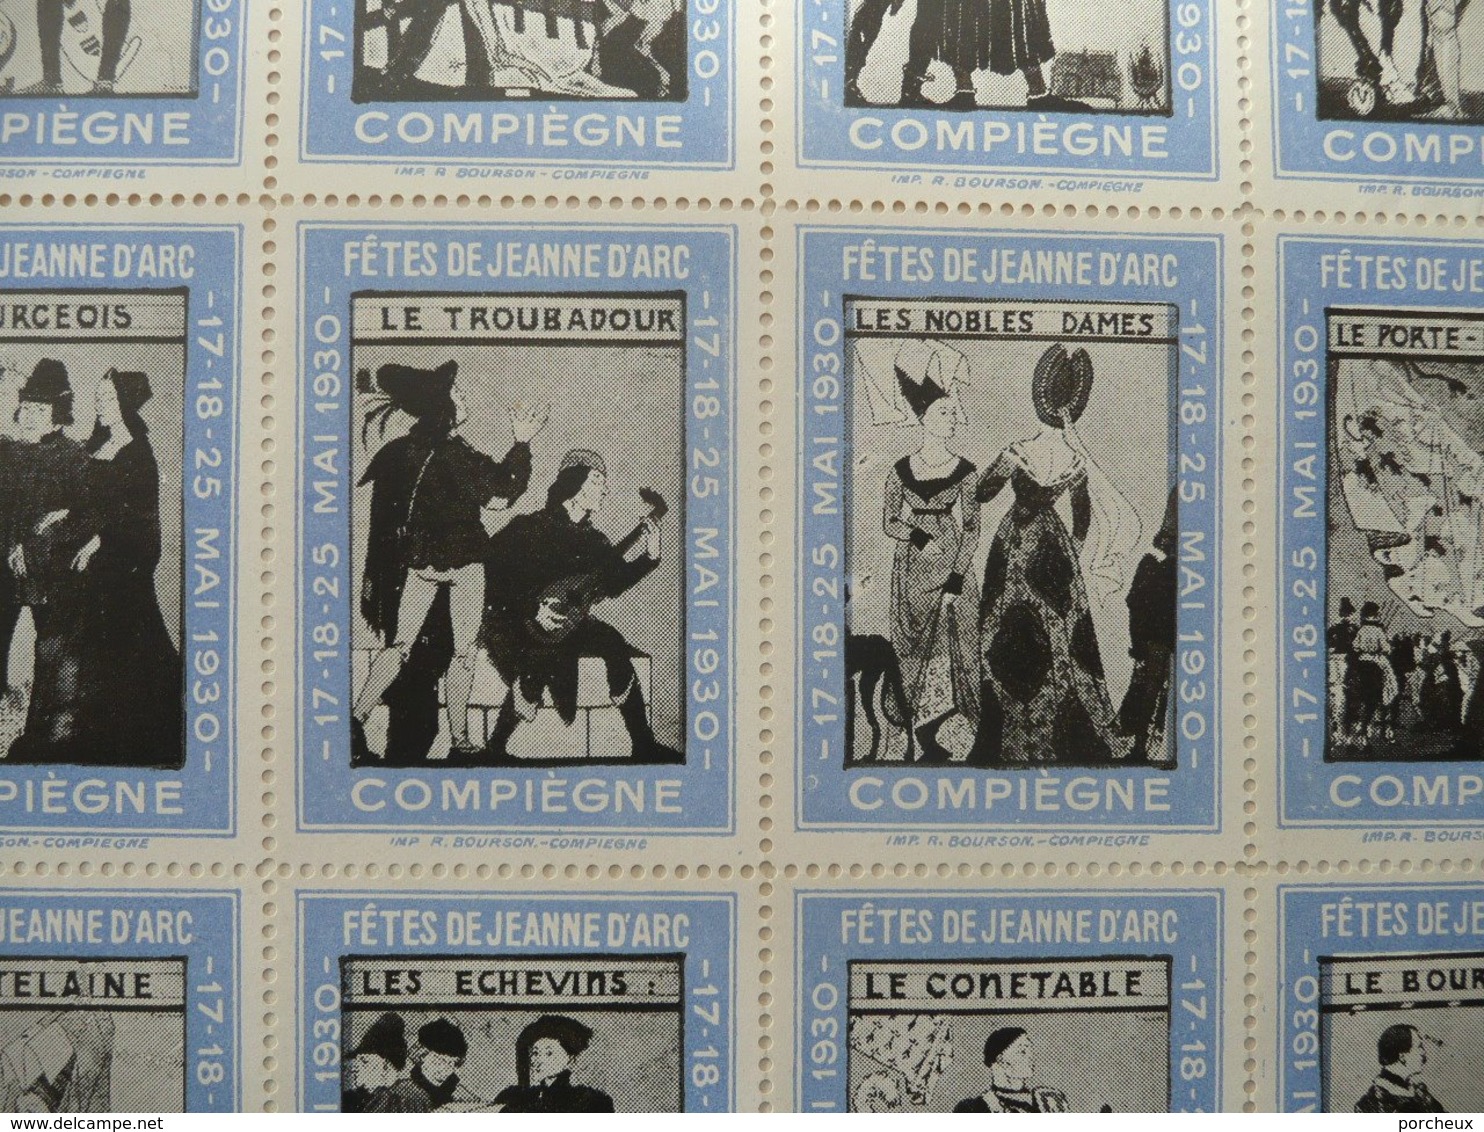 Rare Feuille Complète Vignettes Jeanne D'arc Compiegne 1930 . Feuille De 20 Vignettes . Les Dessins Sont De PINCHON - Erinnofilia